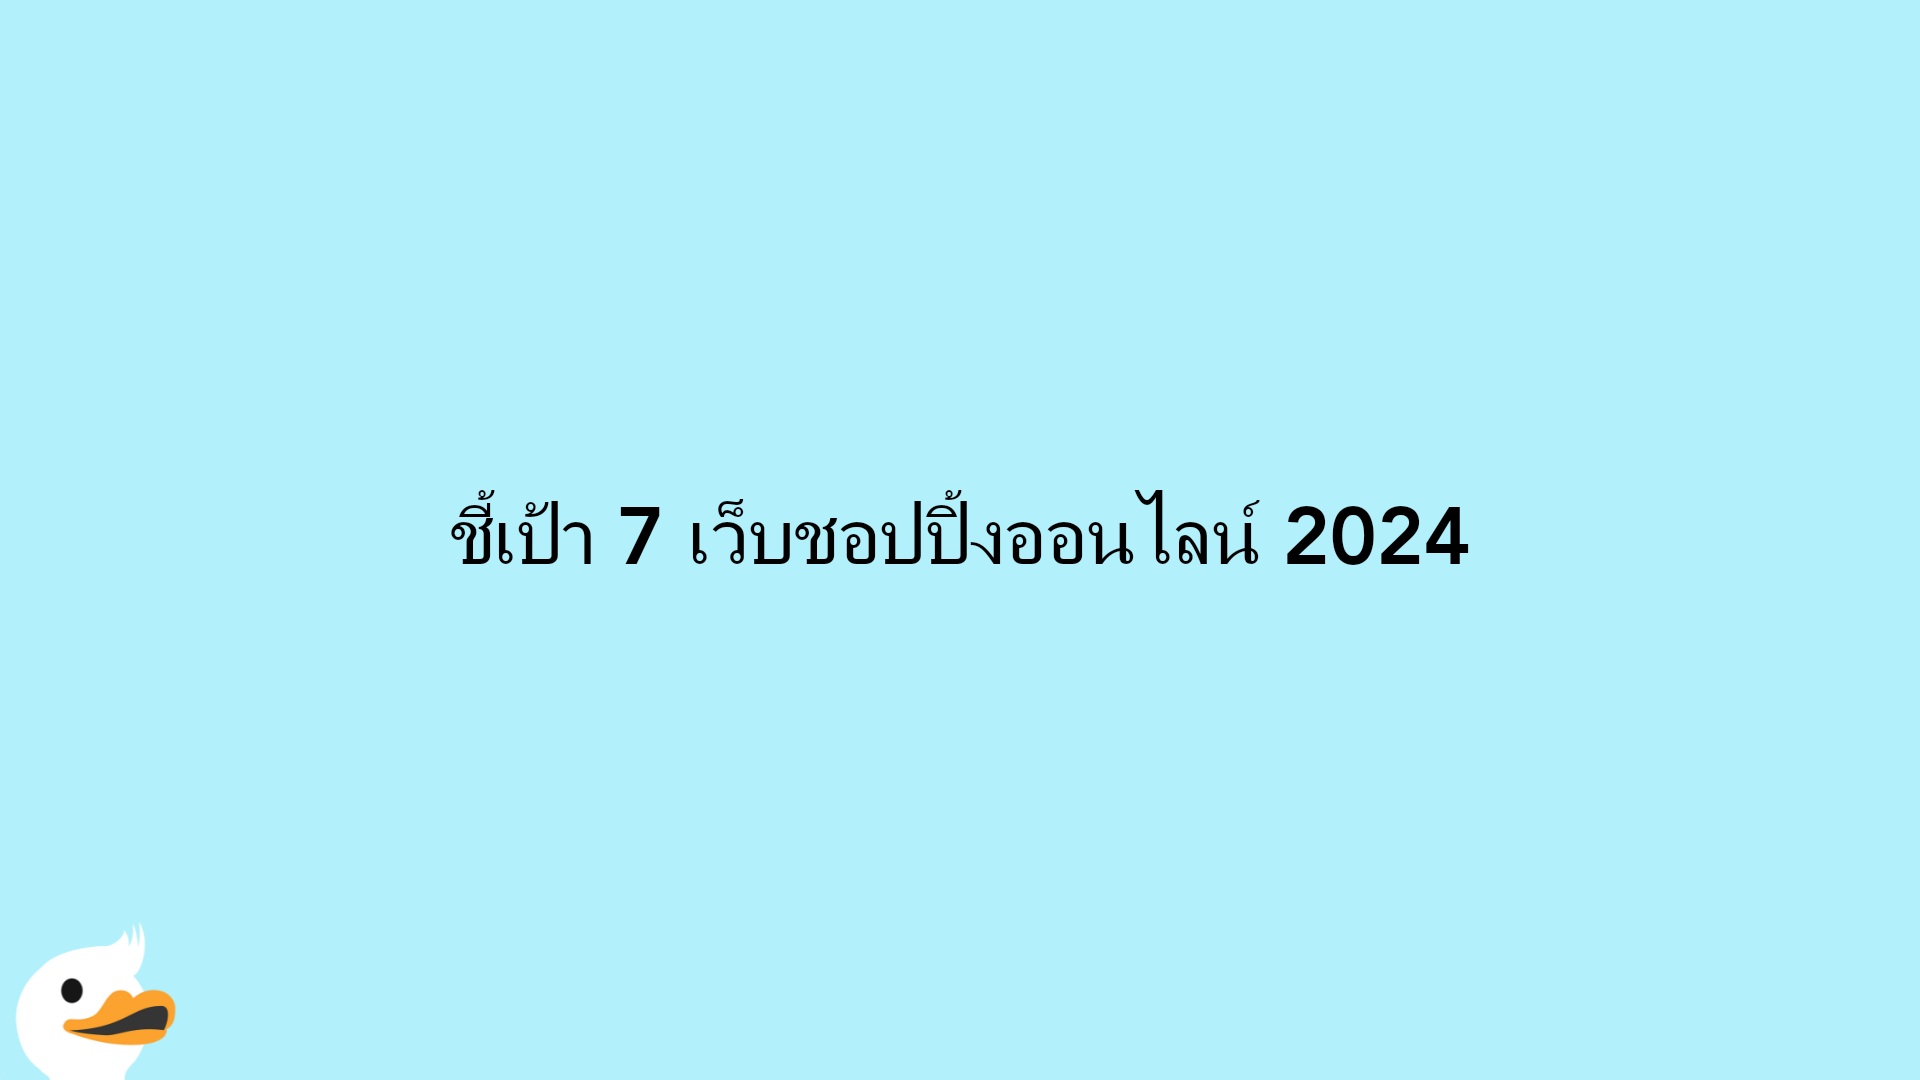 ชี้เป้า 7 เว็บชอปปิ้งออนไลน์ 2024